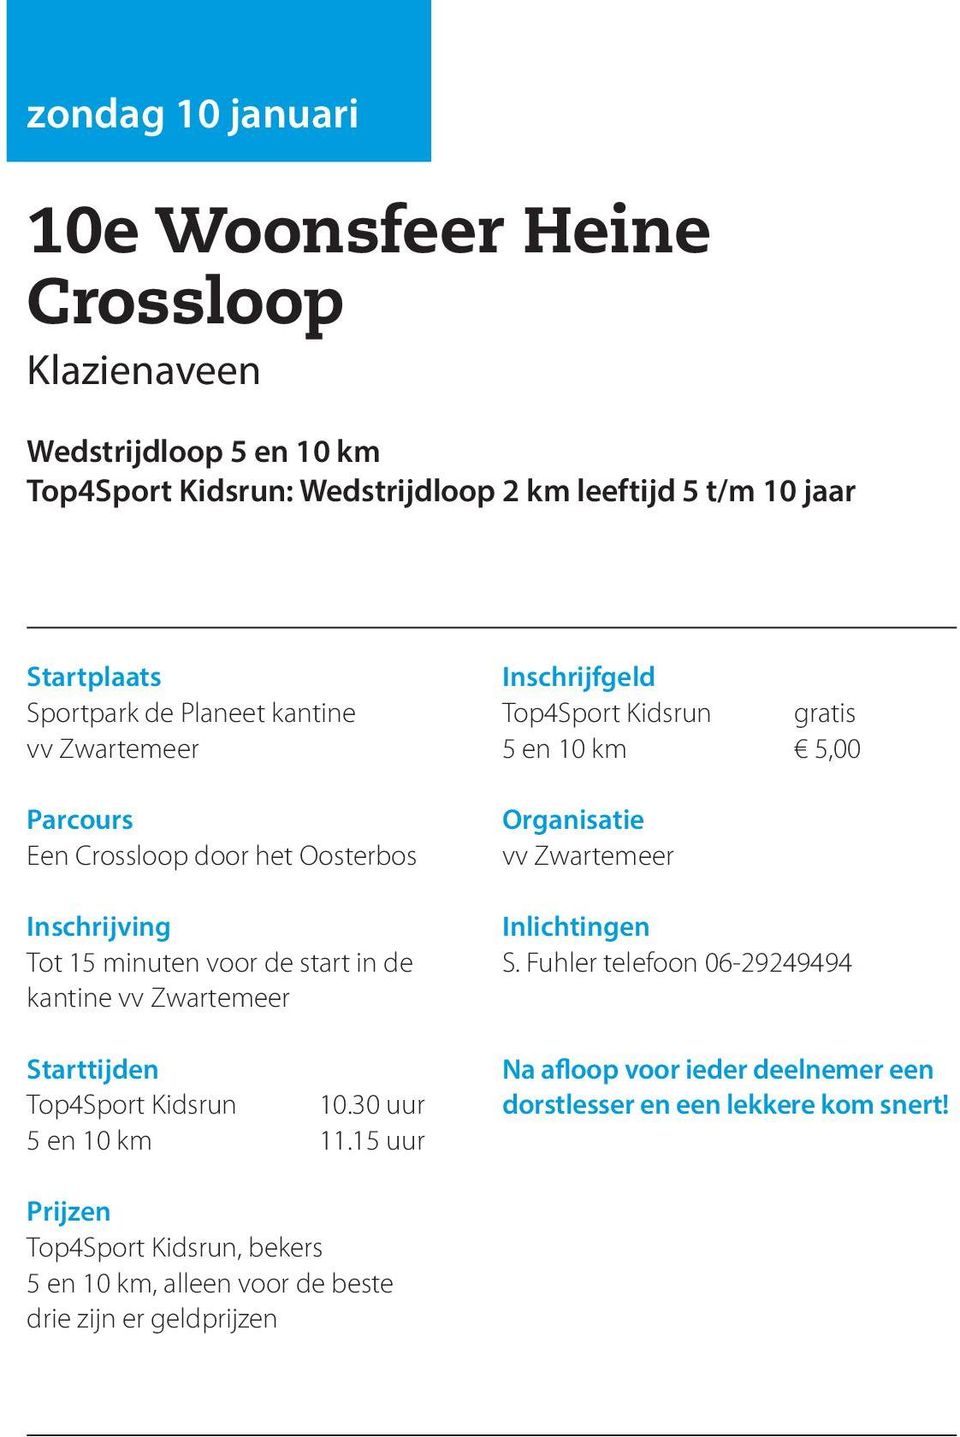 Zwartemeer Top4Sport Kidsrun 10.30 uur 5 en 10 km 11.15 uur Top4Sport Kidsrun gratis 5 en 10 km 5,00 vv Zwartemeer S.